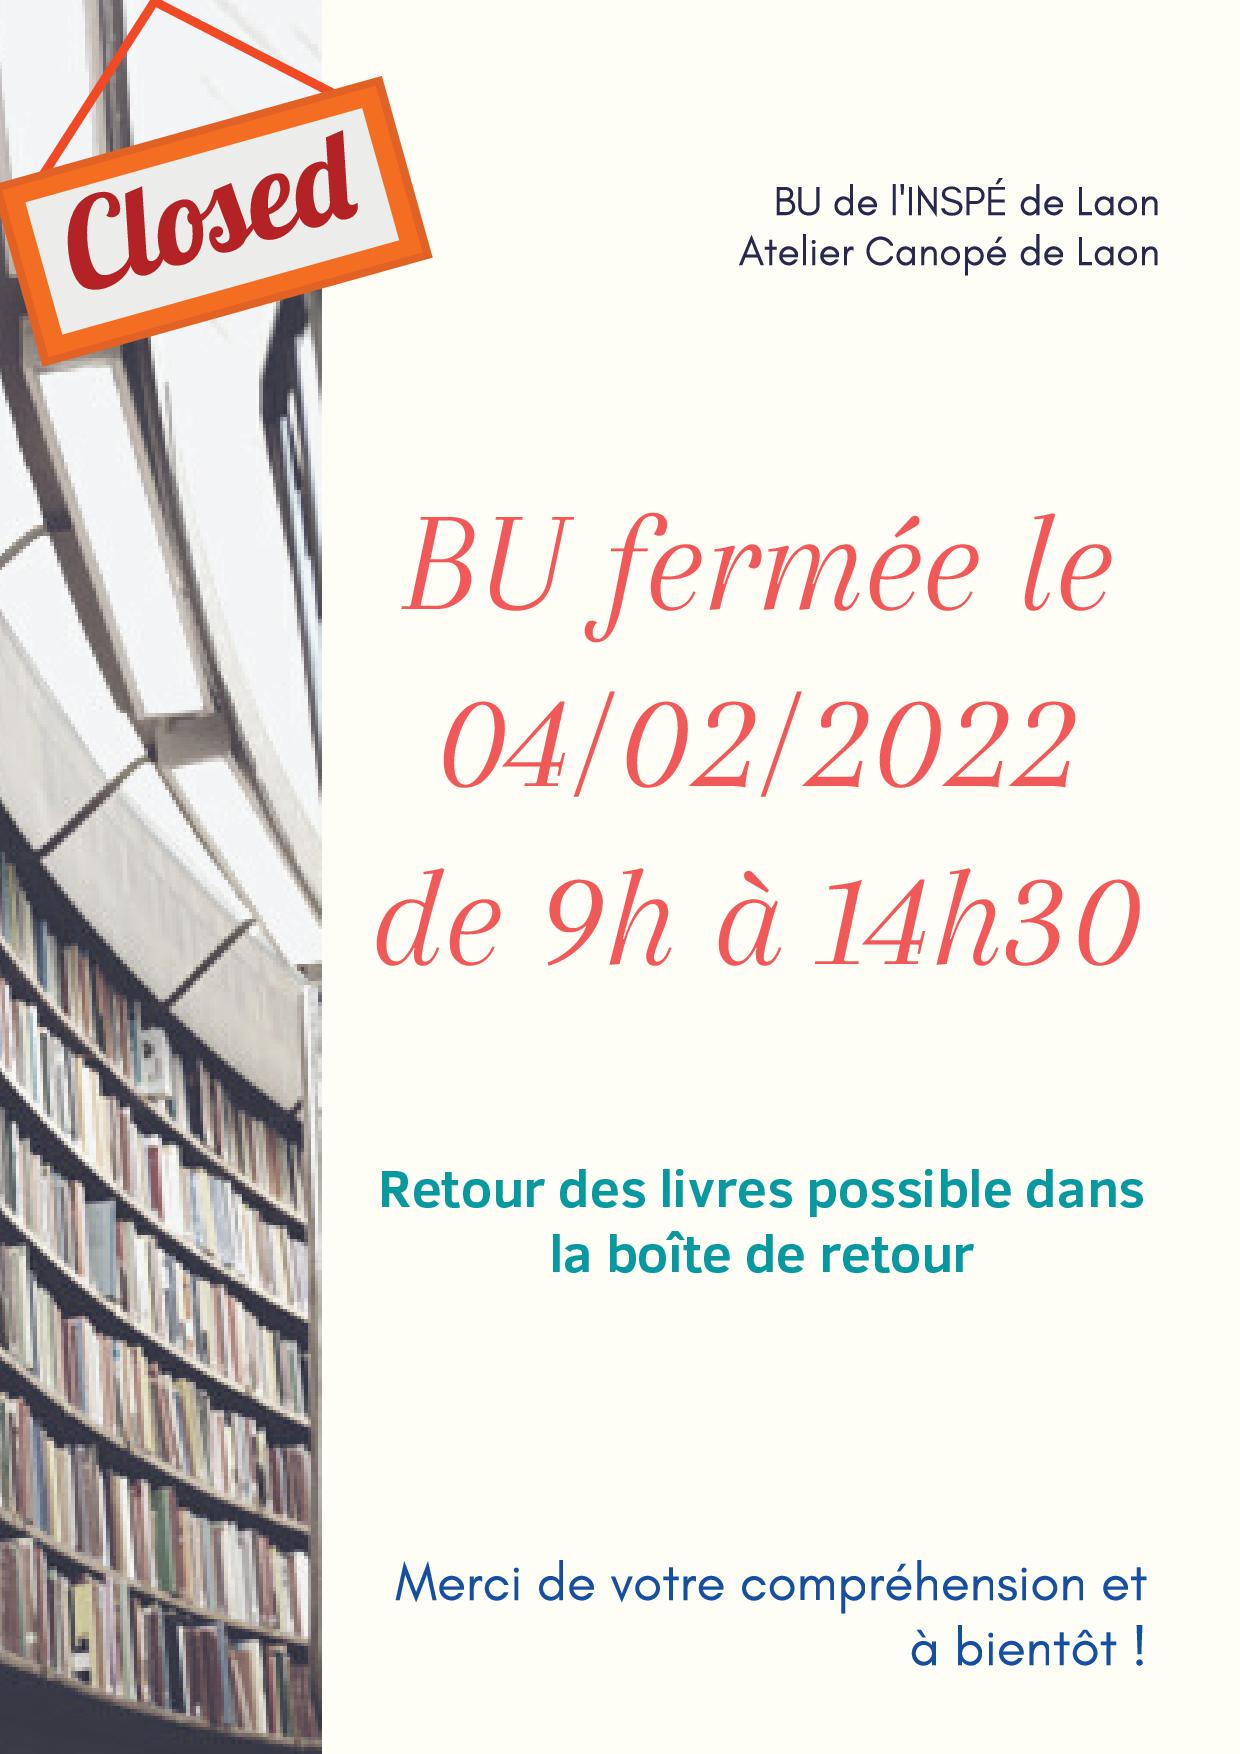 Affiche annonçant la fermeture de la BU de l'inspé de Laon le vendredi 4 février 2022 de 9h à 14h30.